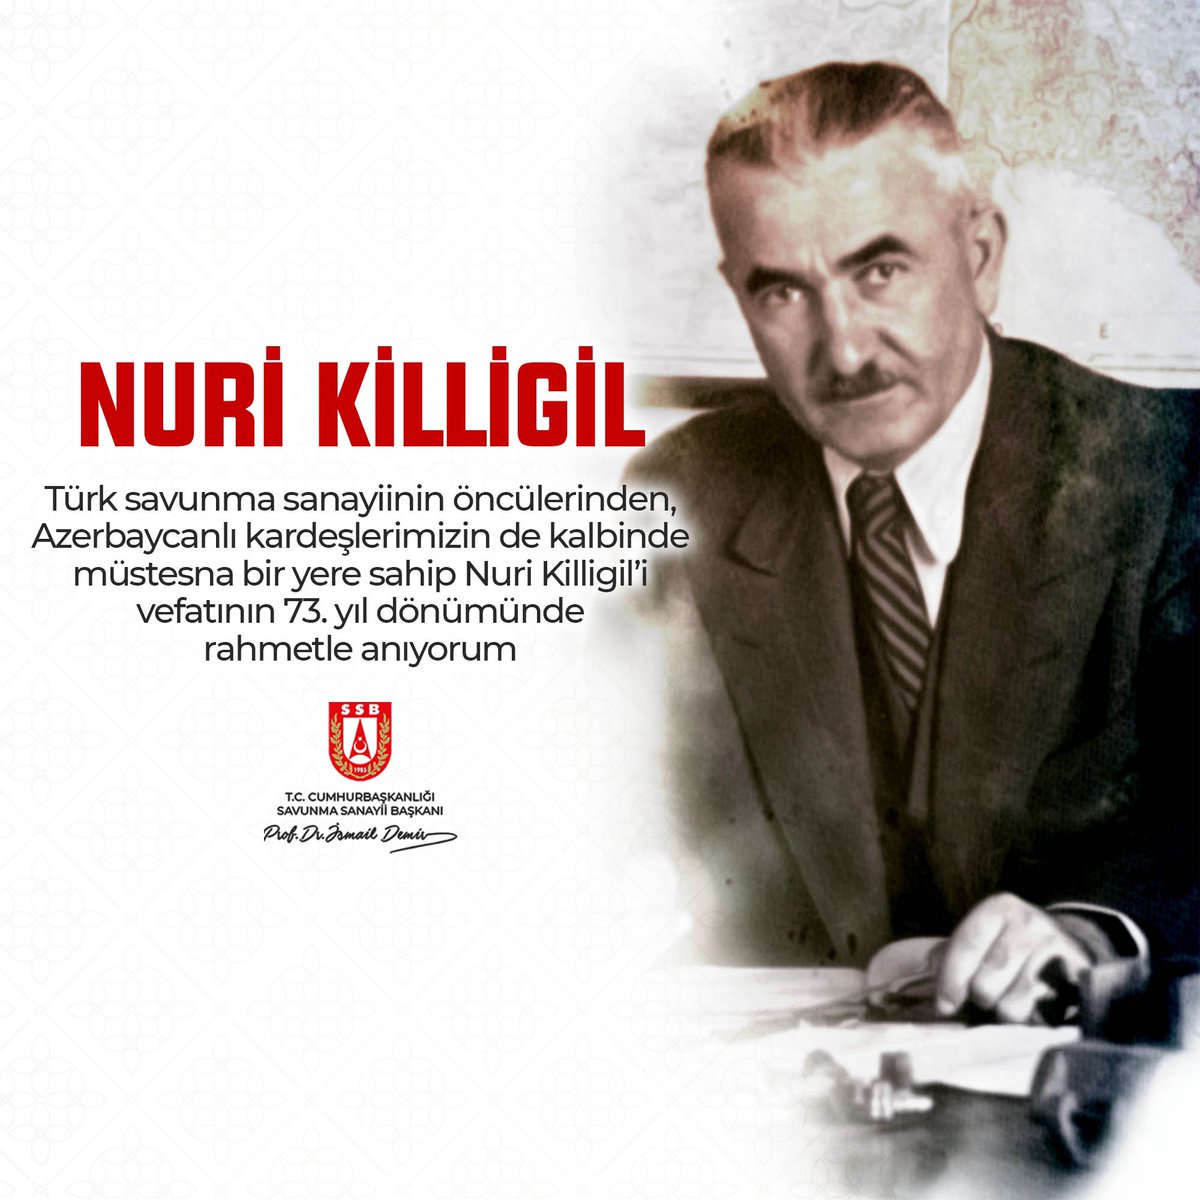 Türk savunma sanayiinin öncülerinden, Azerbaycanlı kardeşlerimizin de kalbinde müstesna bir yere sahip Nuri Killigil Paşa’yı vefatının 73. yıl dönümünde rahmetle anıyorum.

#NuriKilligil